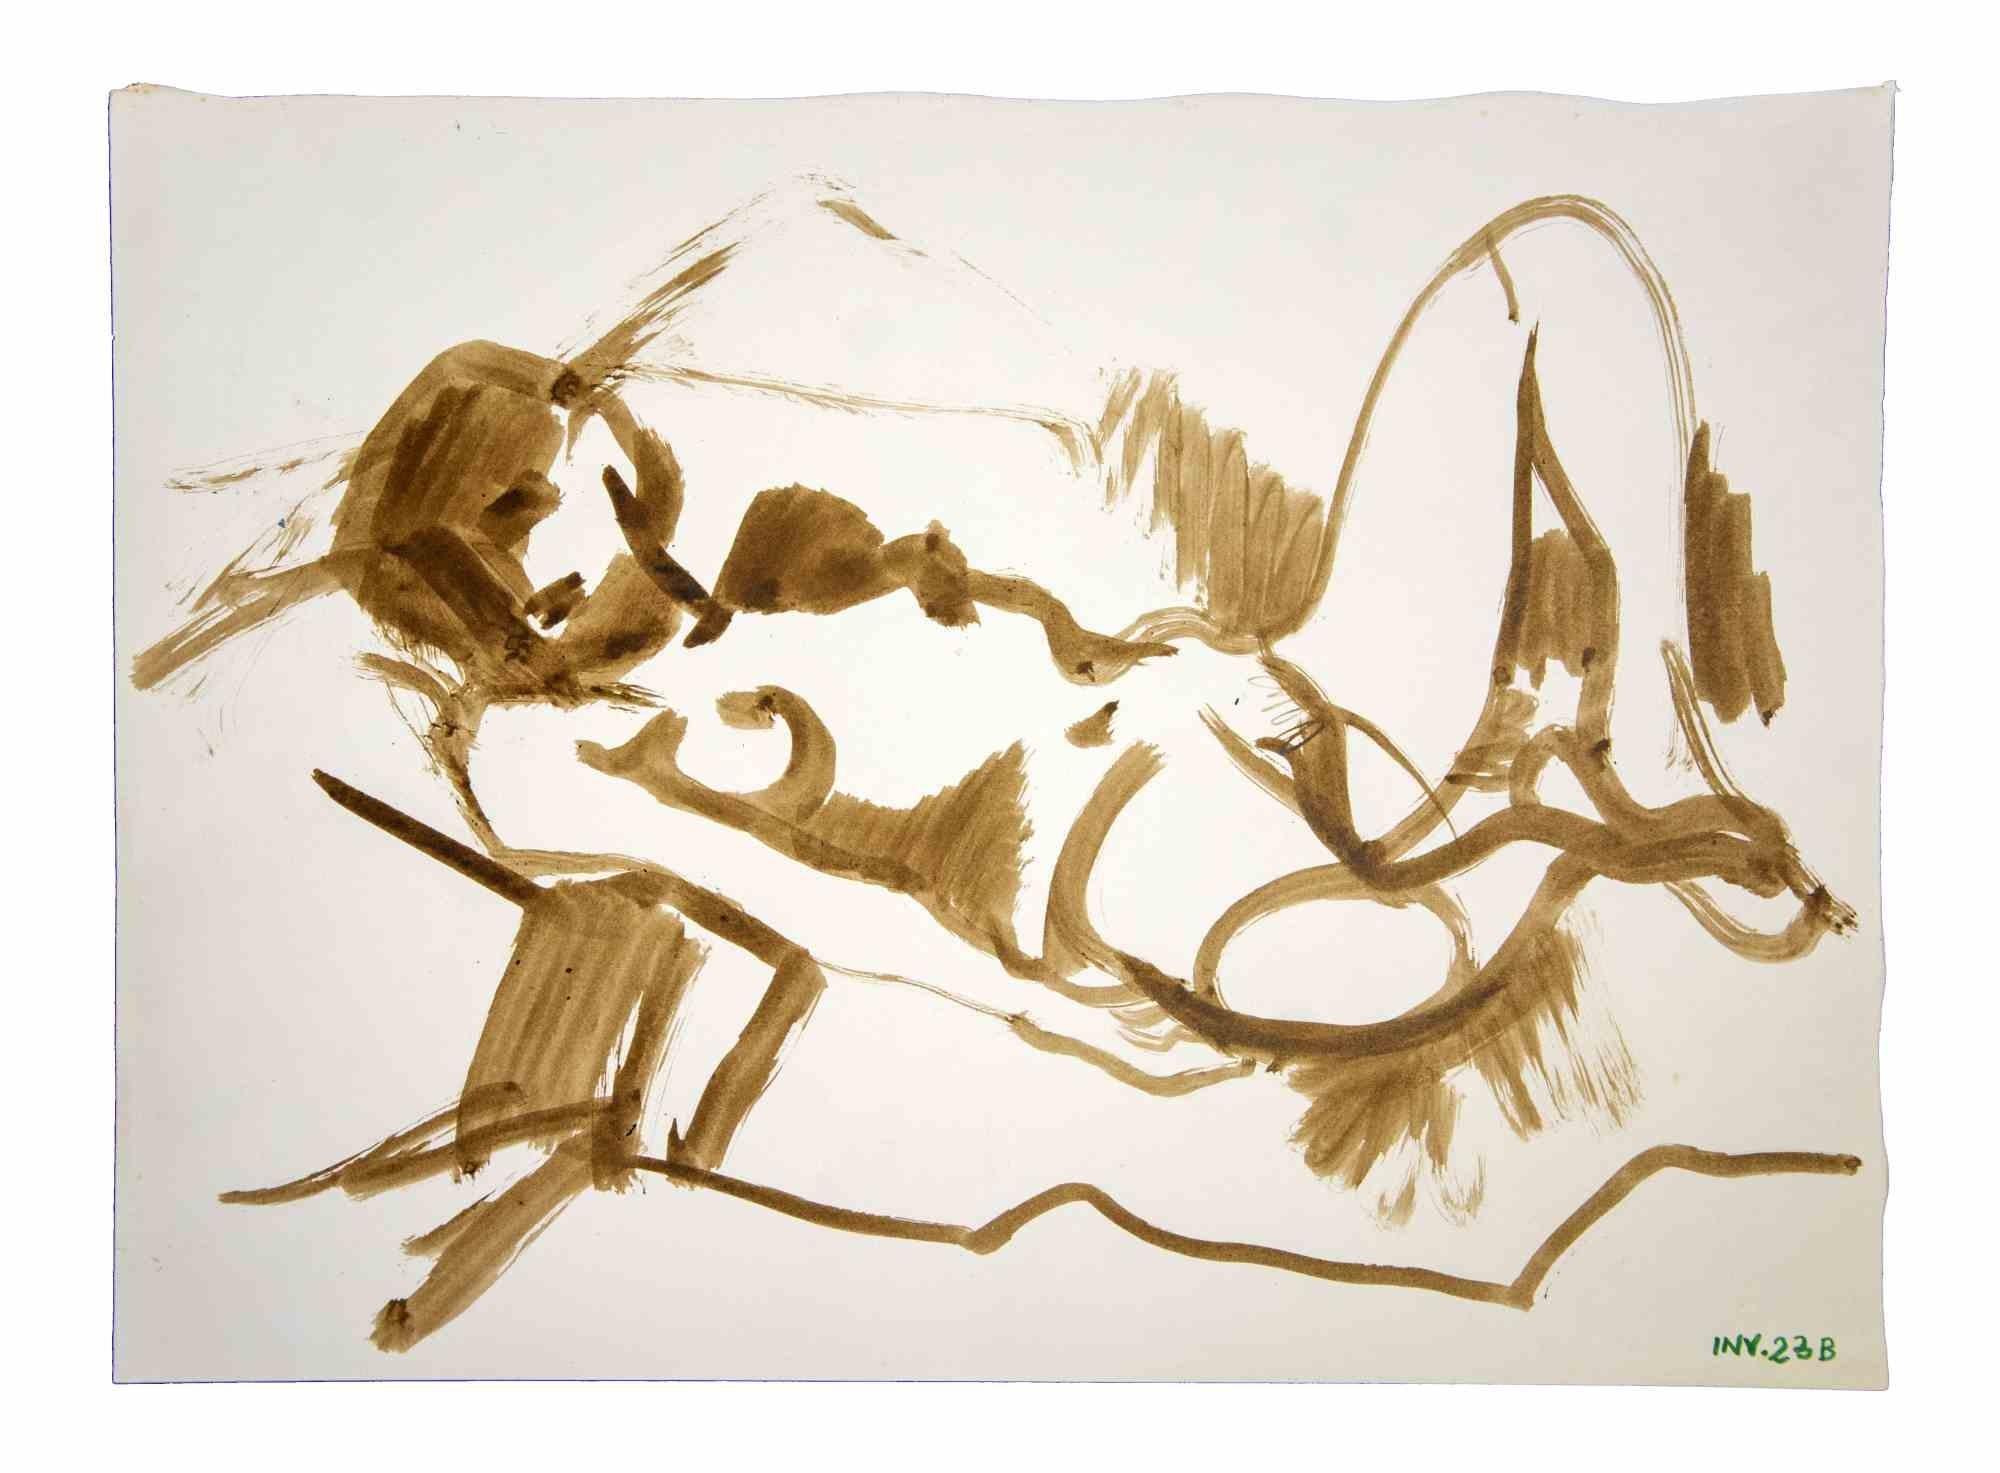 Reclined Nude ist ein Originalkunstwerk, das in den 1980er Jahren von dem italienischen Künstler AM Contemporary  Leo Guida  (1992 - 2017).

Originalzeichnungen in Aquarell auf Papier.

Guter Zustand, aber gealtert.

Das Kunstwerk wird durch